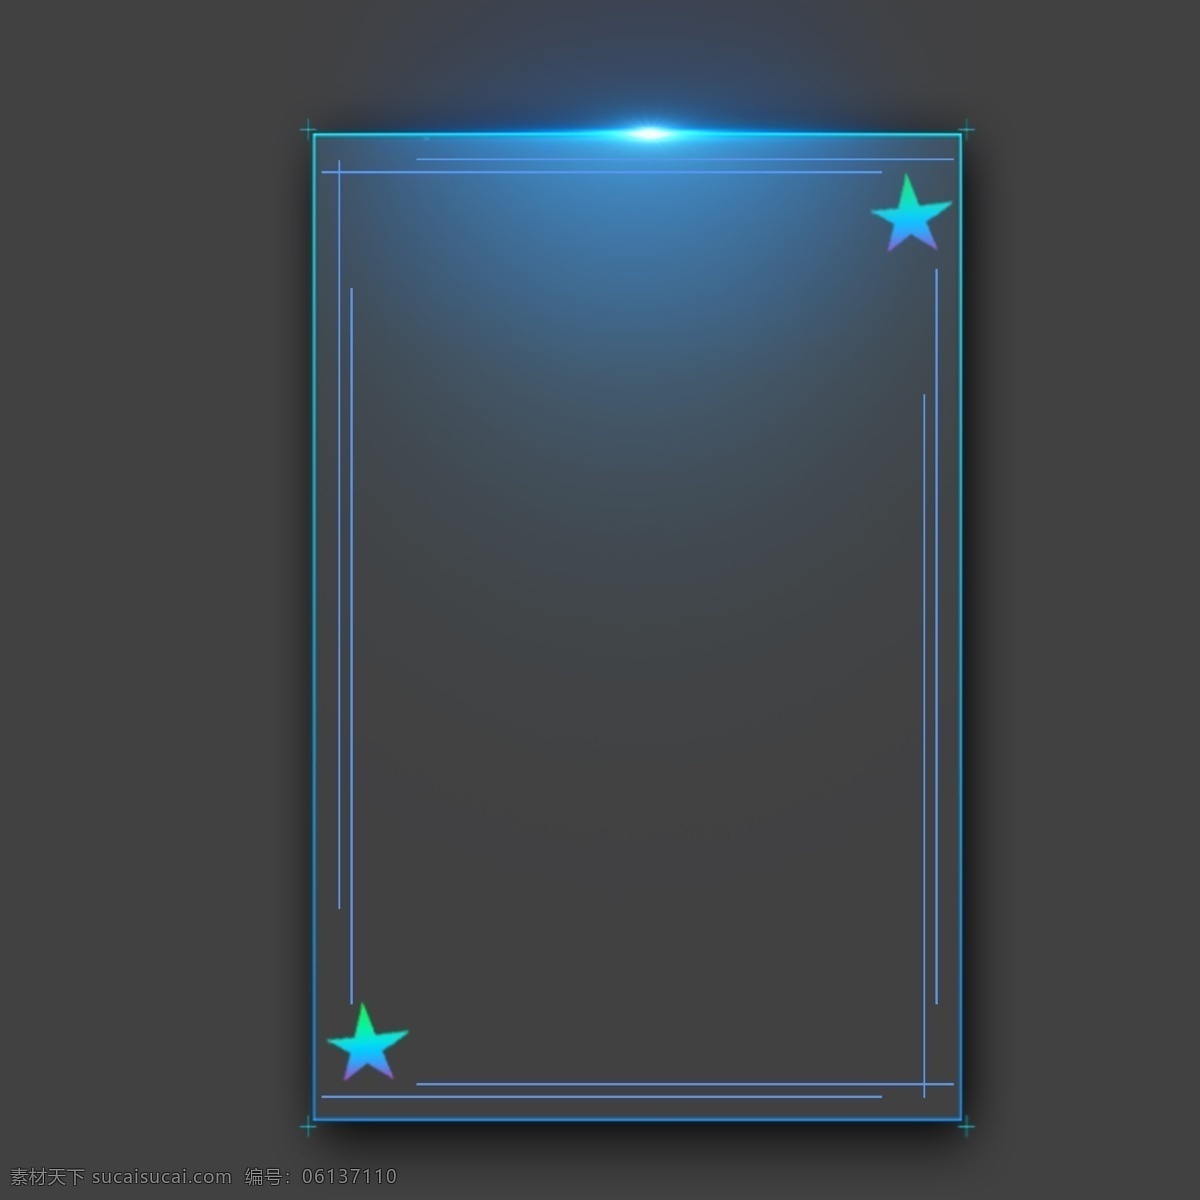 蓝色 灯光 五角星 柜 形 边框 手绘大图下载 300像素 柜形边框